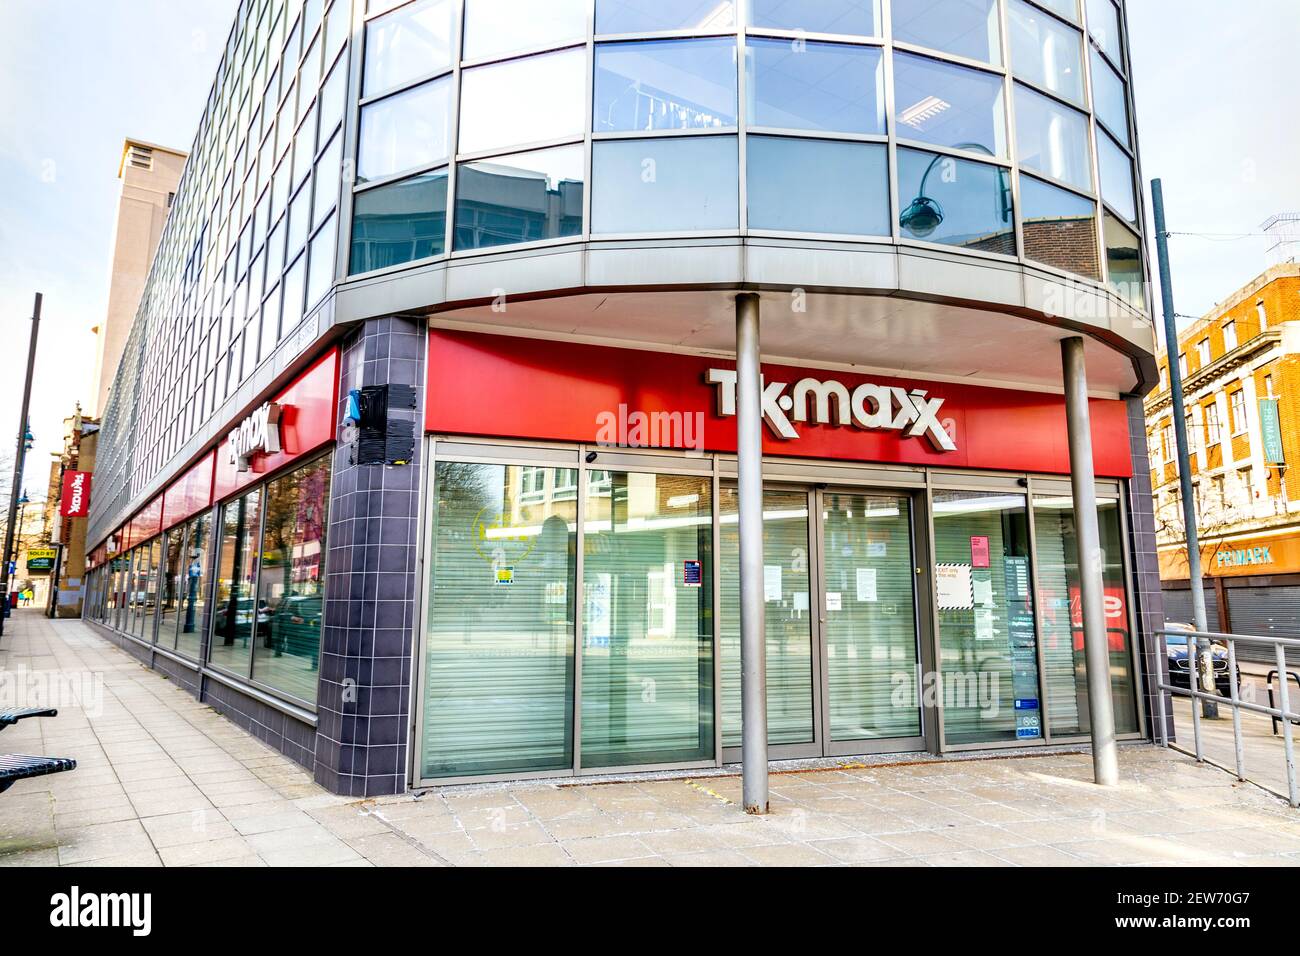 13 février 2021 Londres, Royaume-Uni - extérieur du magasin TK Maxx fermé à Woolwich pendant le confinement pandémique du coronavirus Banque D'Images